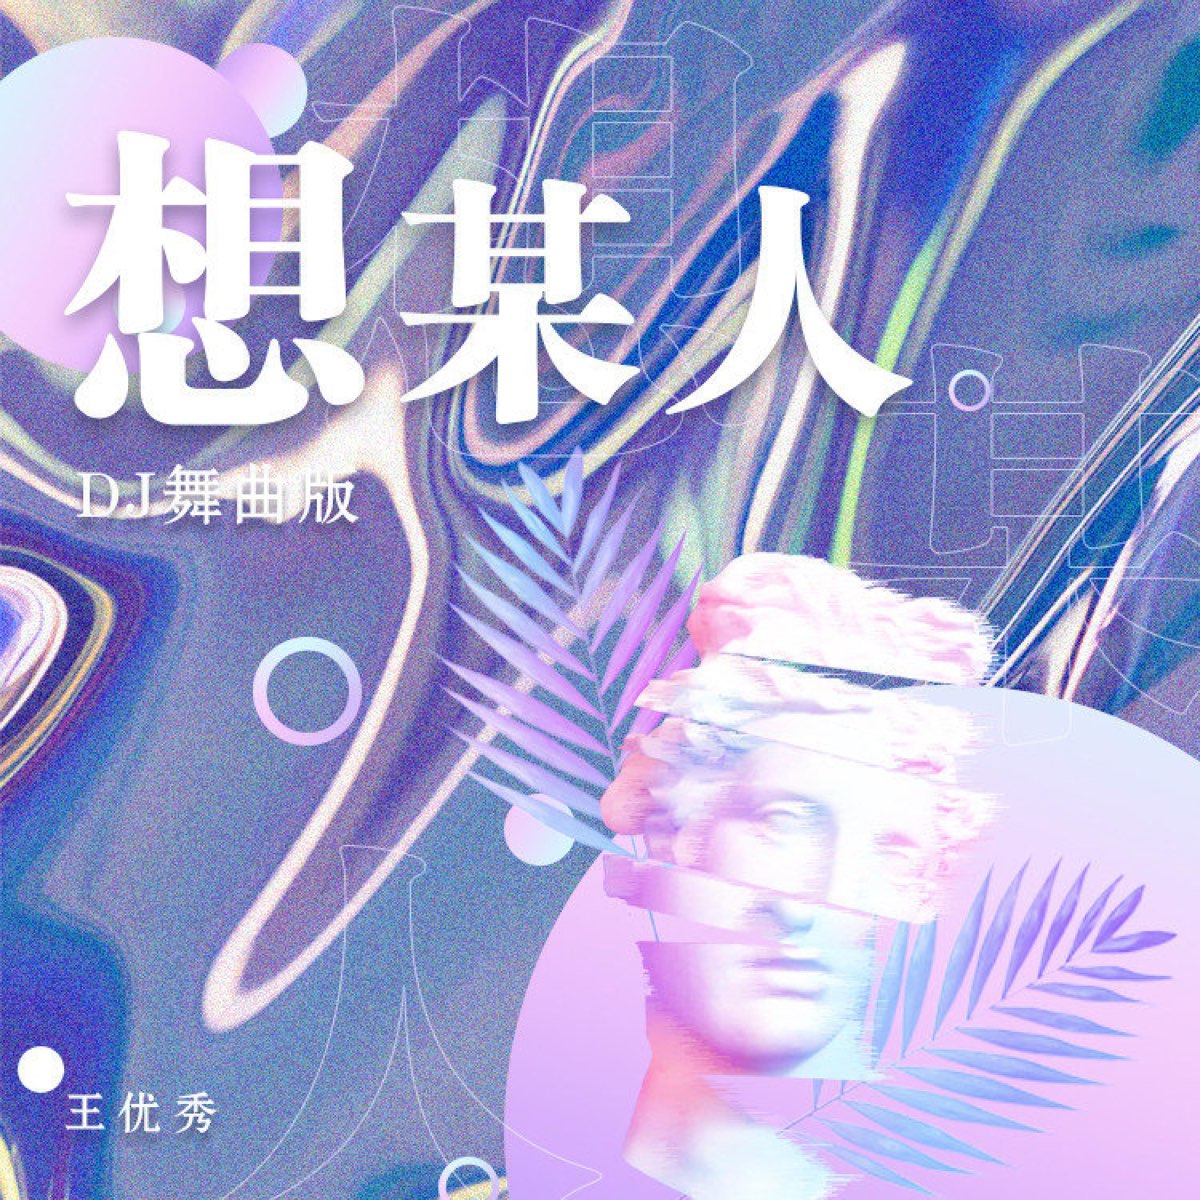 王优秀 — 想某人 (DJ舞曲版) cover artwork